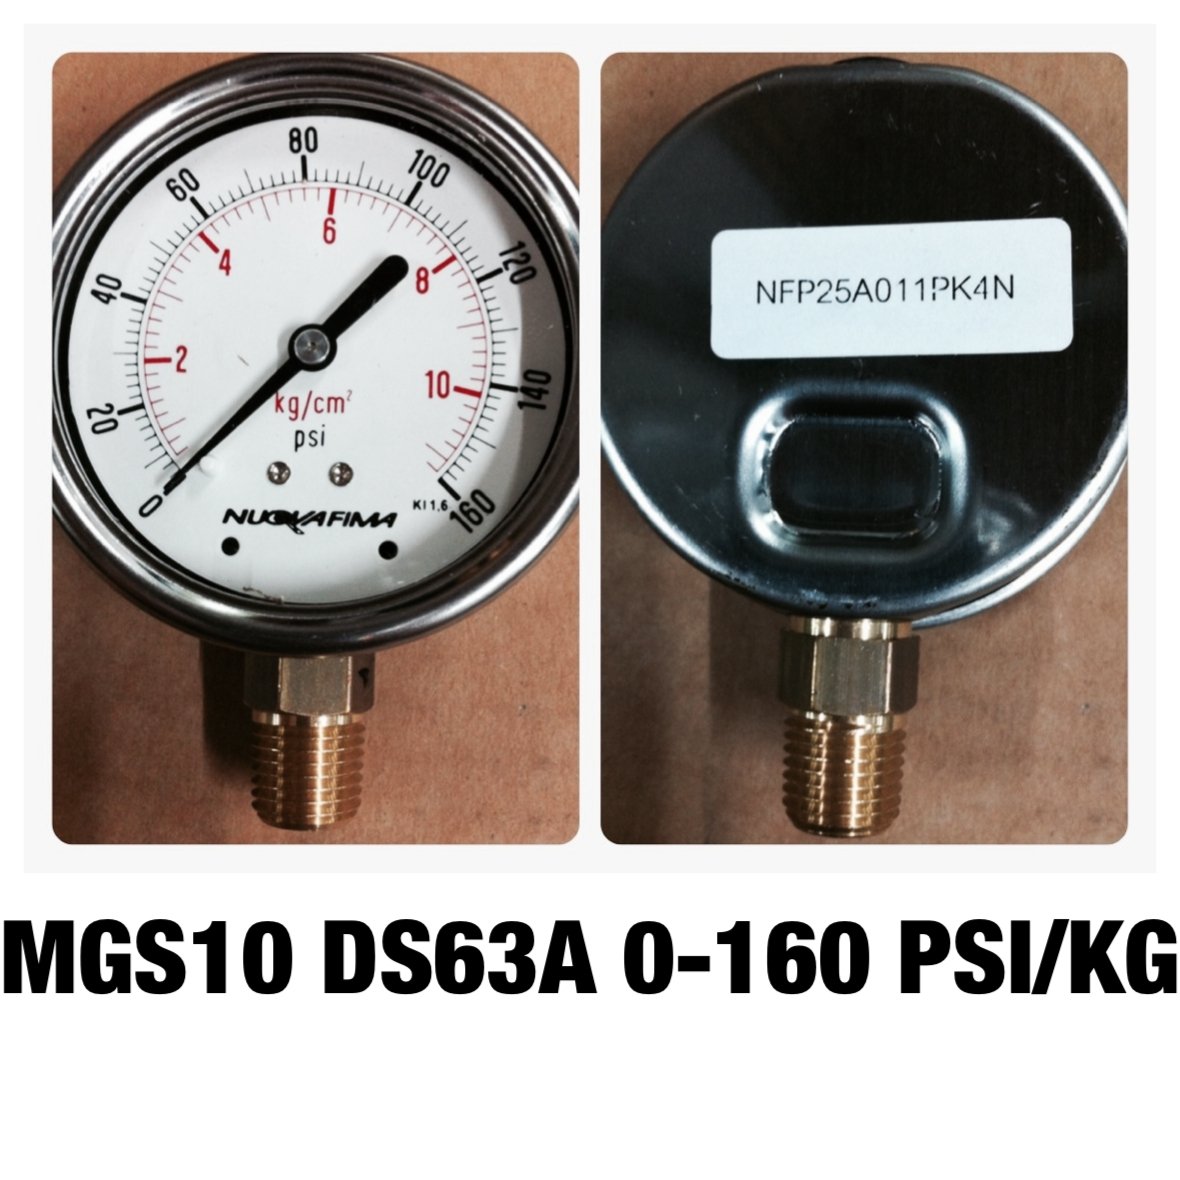 เกจ์วัดความดัน 2.5 นิ้ว 0-10 Kg/cm2 (160PSI) ออกล่าง เกลียว 1/4" NPT ทองเหลือง MGS10 DS63A NUOVAFIMA Pressure Gauge Made in ITALY @ ราคา